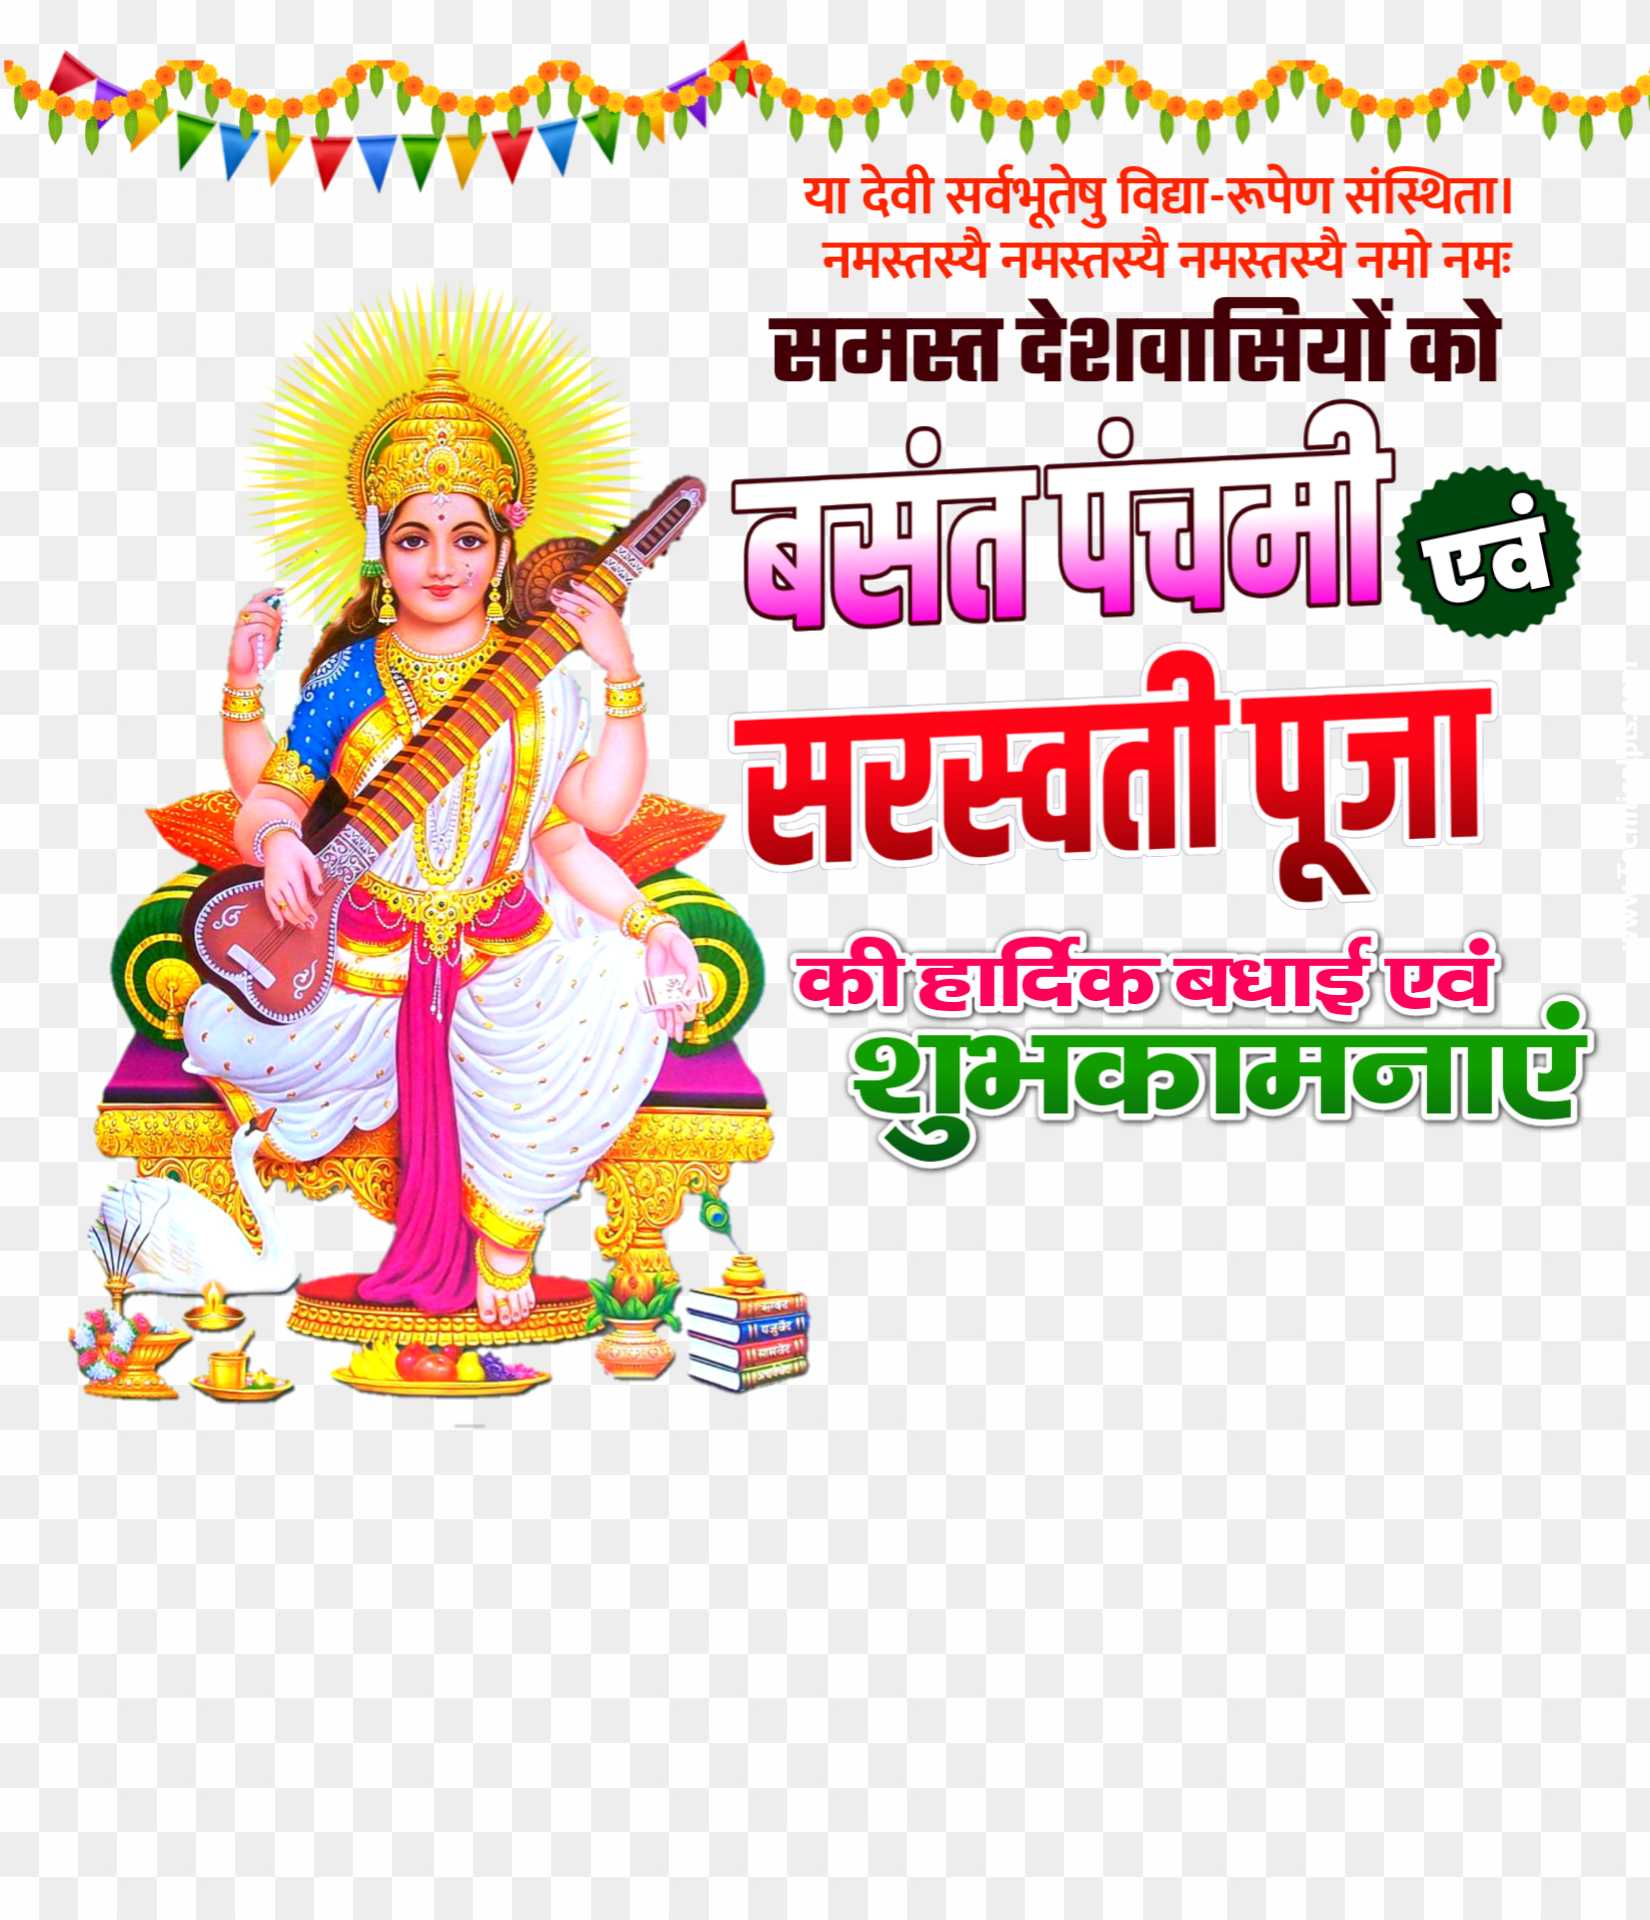 Saraswati Puja banner editing PNG images 